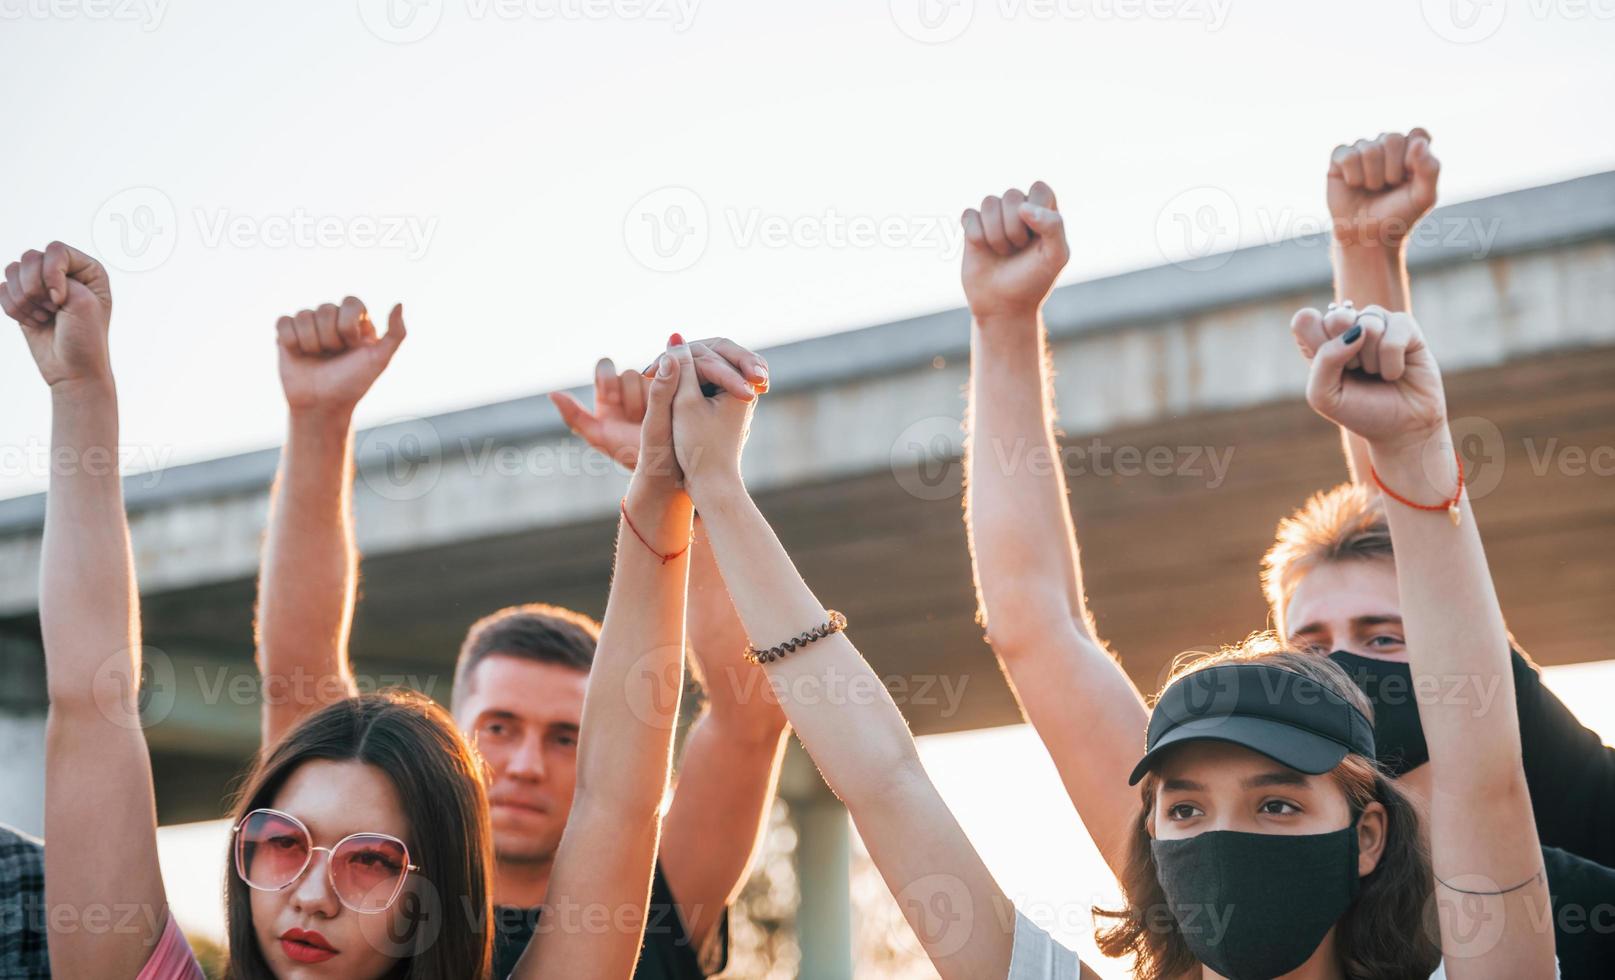 hoch erhobene Fäuste. Gruppe protestierender junger Menschen, die zusammenstehen. Aktivist für Menschenrechte oder gegen die Regierung foto